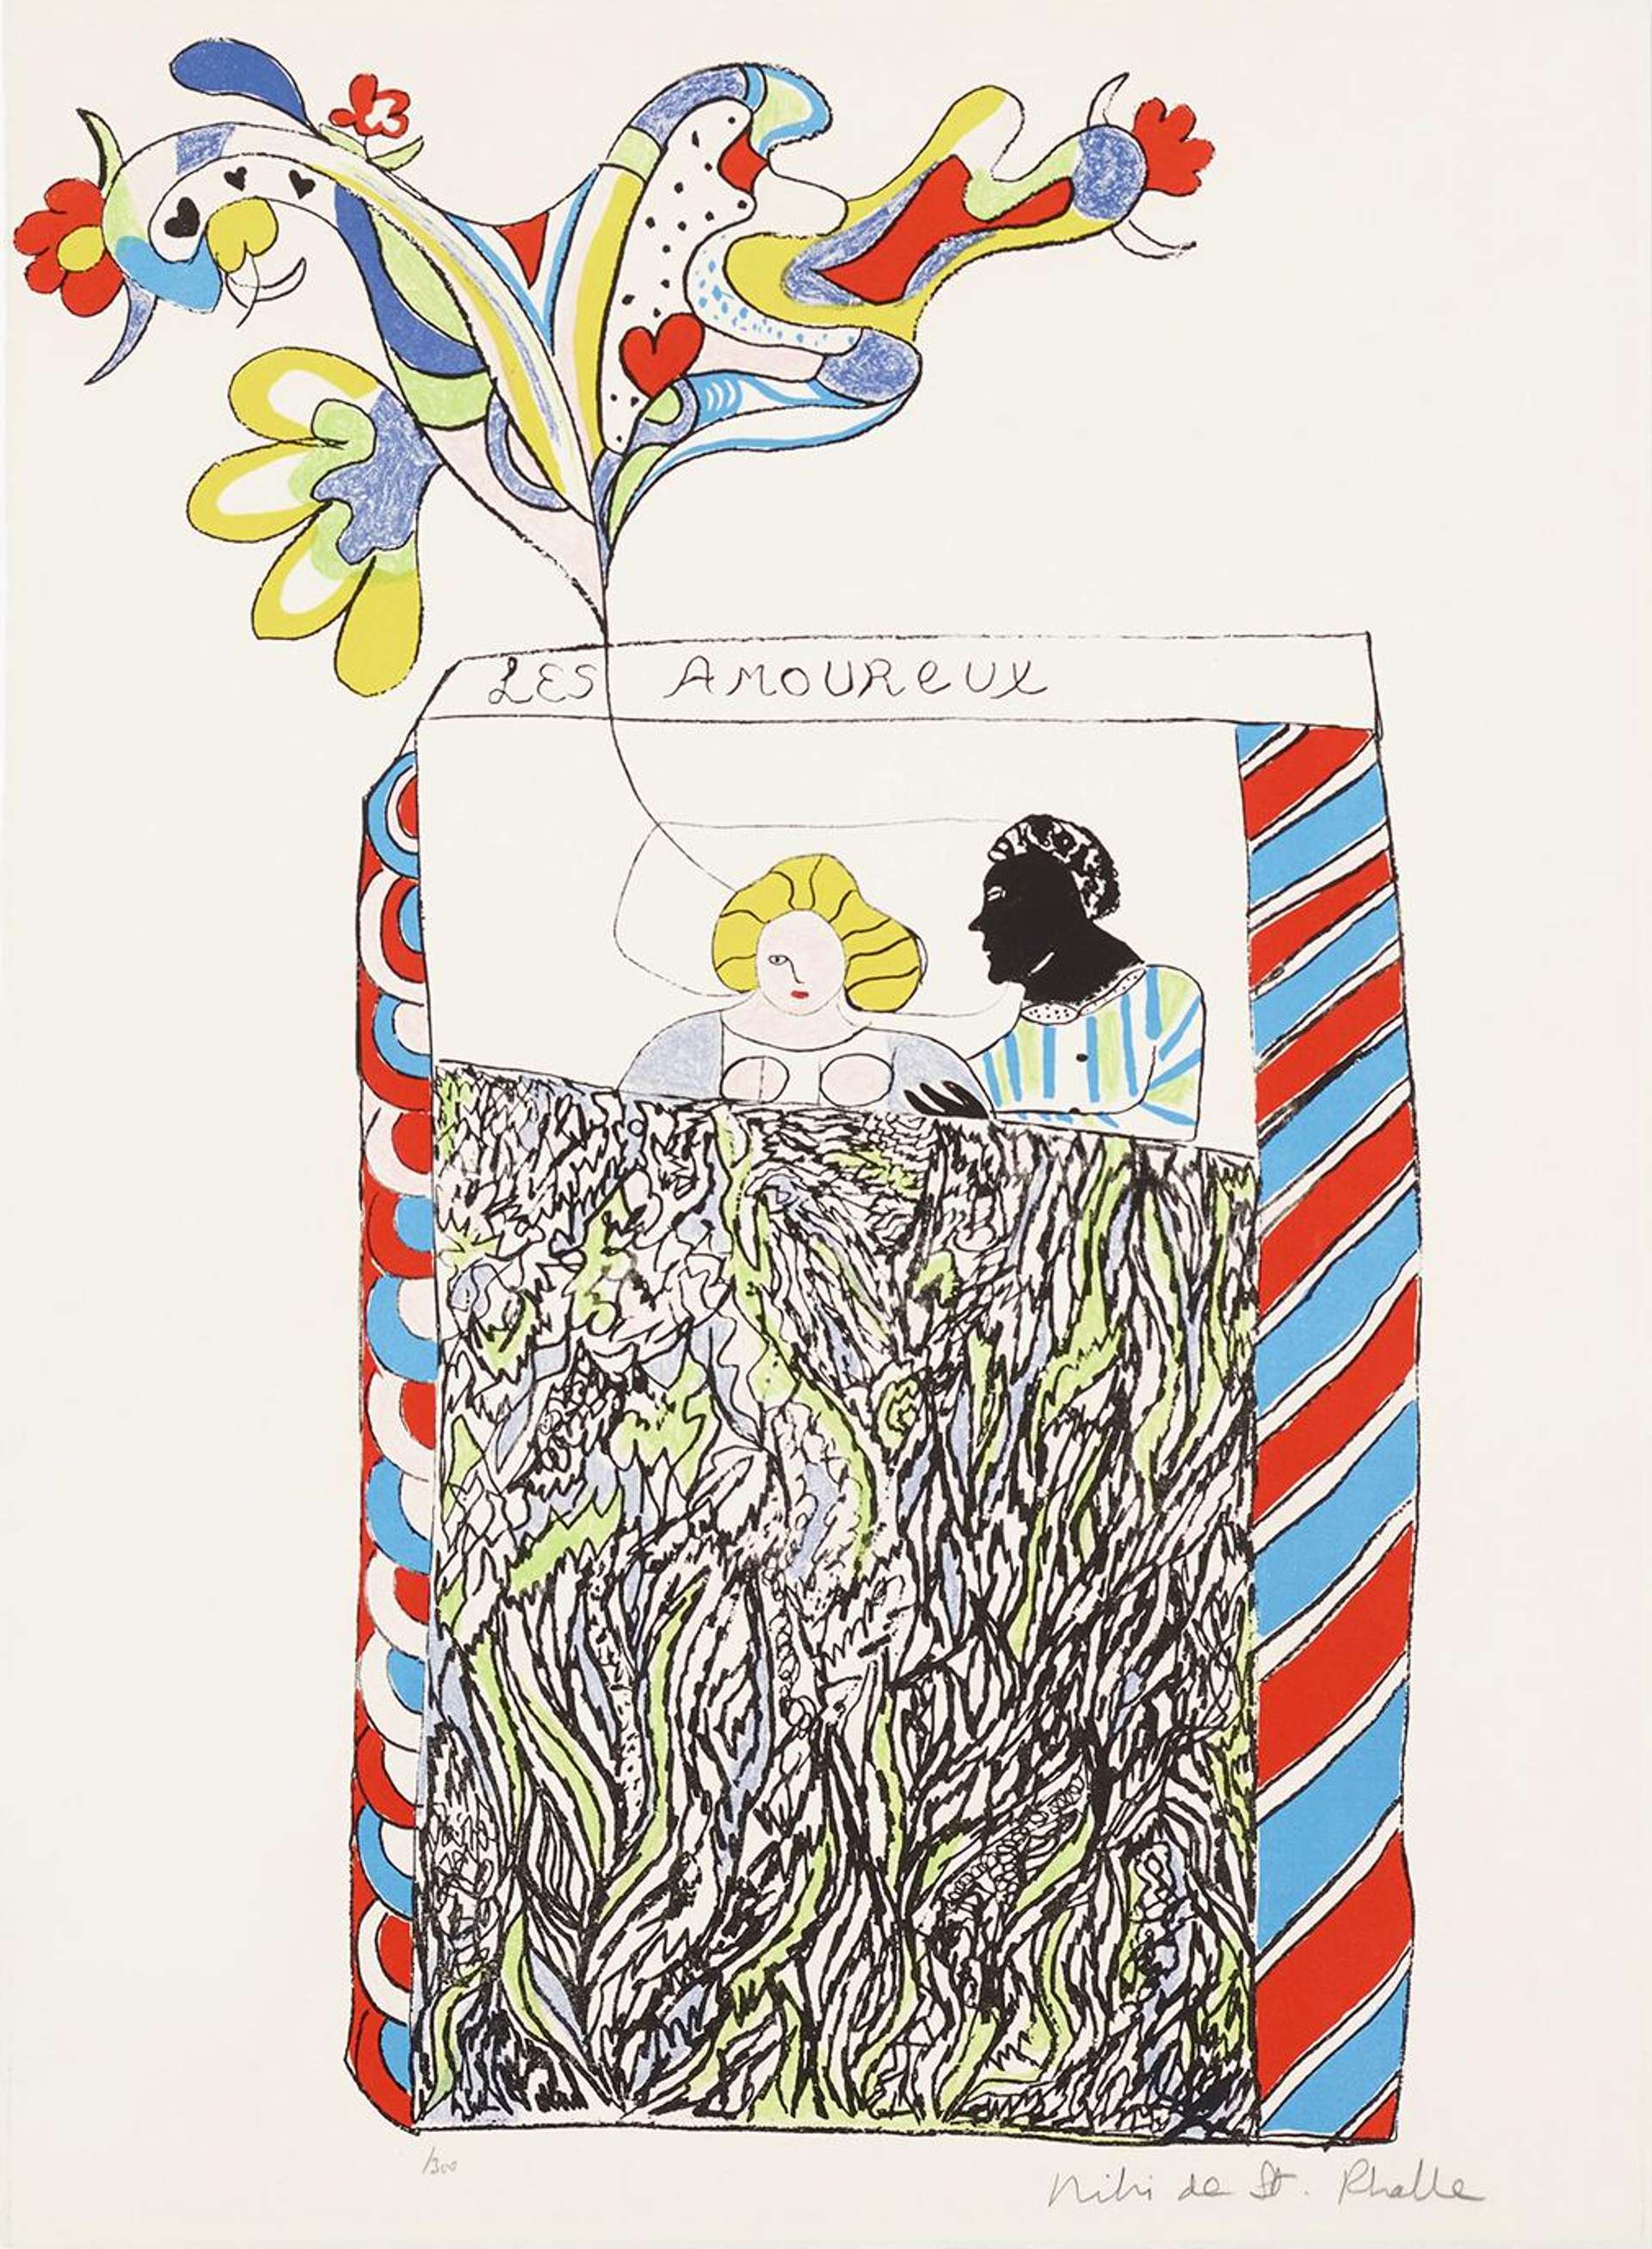 Les Amoureux - Signed Print by Niki de Saint Phalle 1971 - MyArtBroker